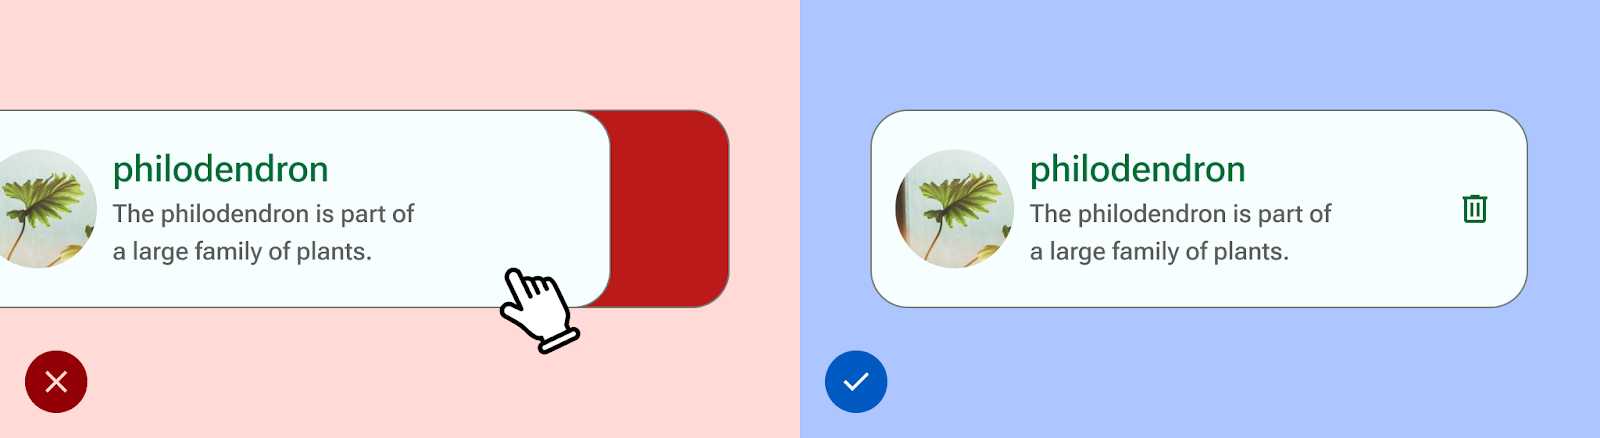 UI di sebelah kiri memungkinkan pengguna menghapus hanya dengan menggeser,
 sedangkan UI di sebelah kanan juga memberikan kemampuan tambahan dalam bentuk
 tombol ikon tempat sampah.